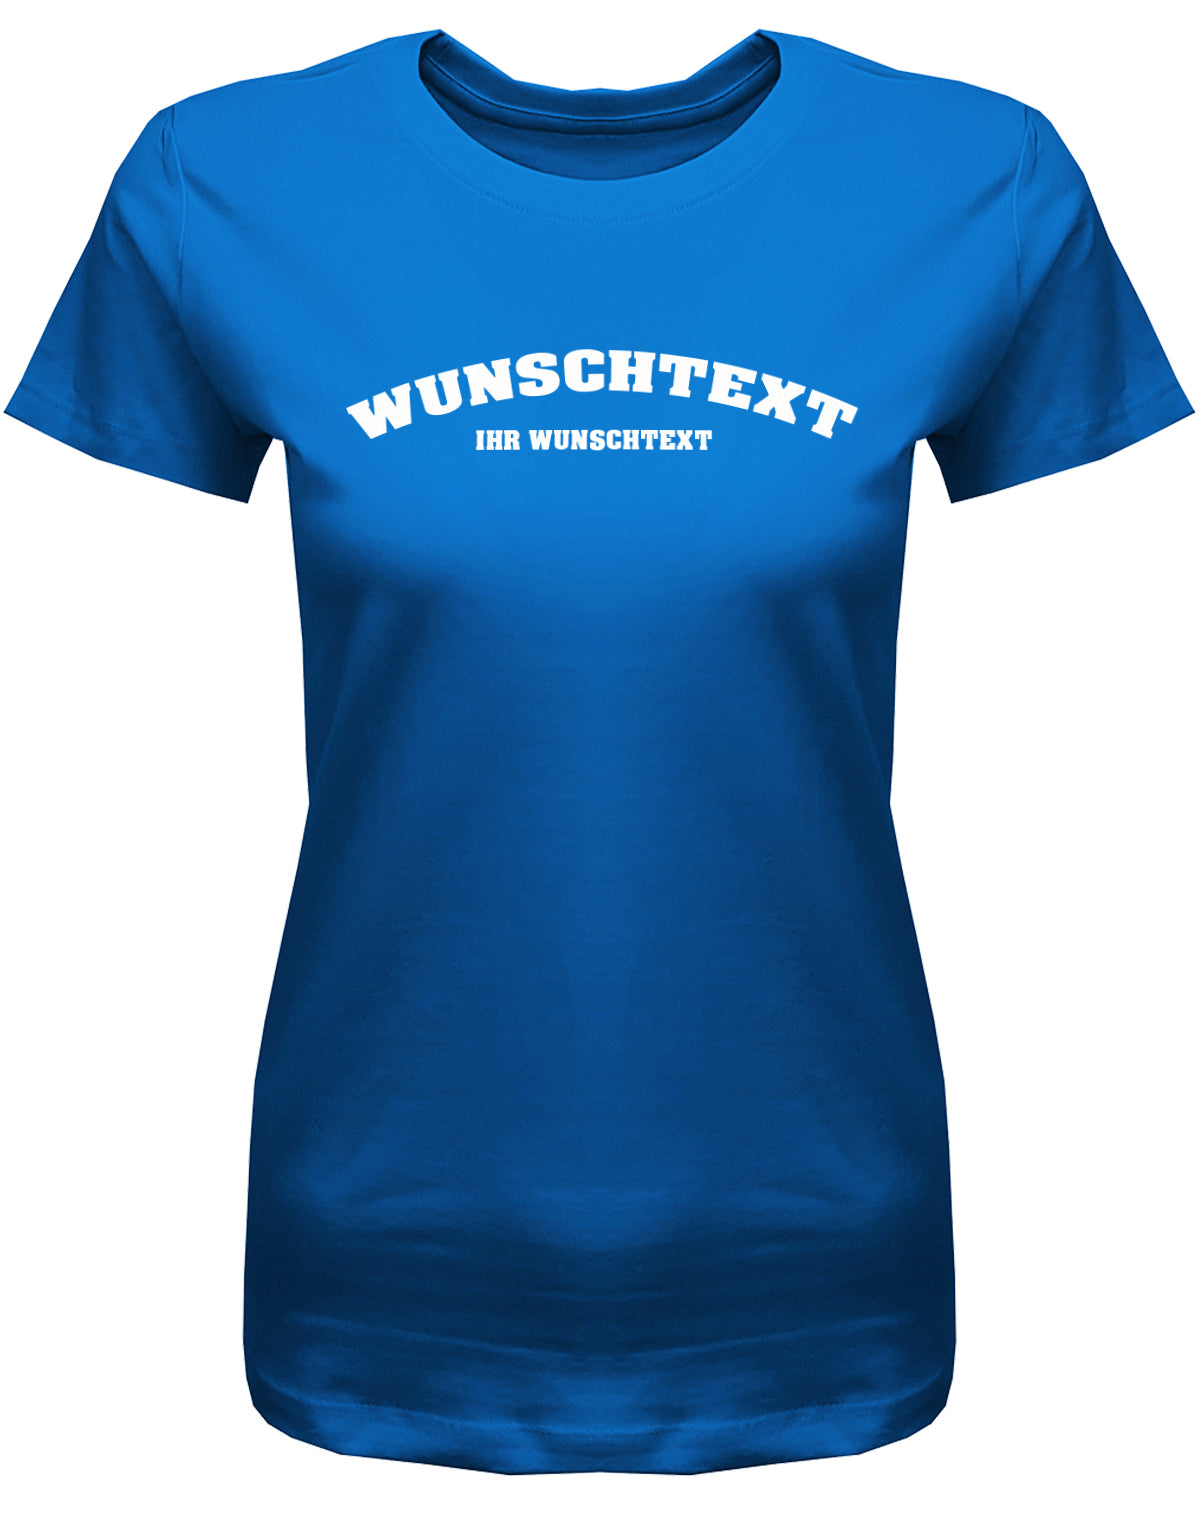 Frauen Tshirt mit Wunschtext.  Abgerundeter Text im Collage-Style. Royalblau